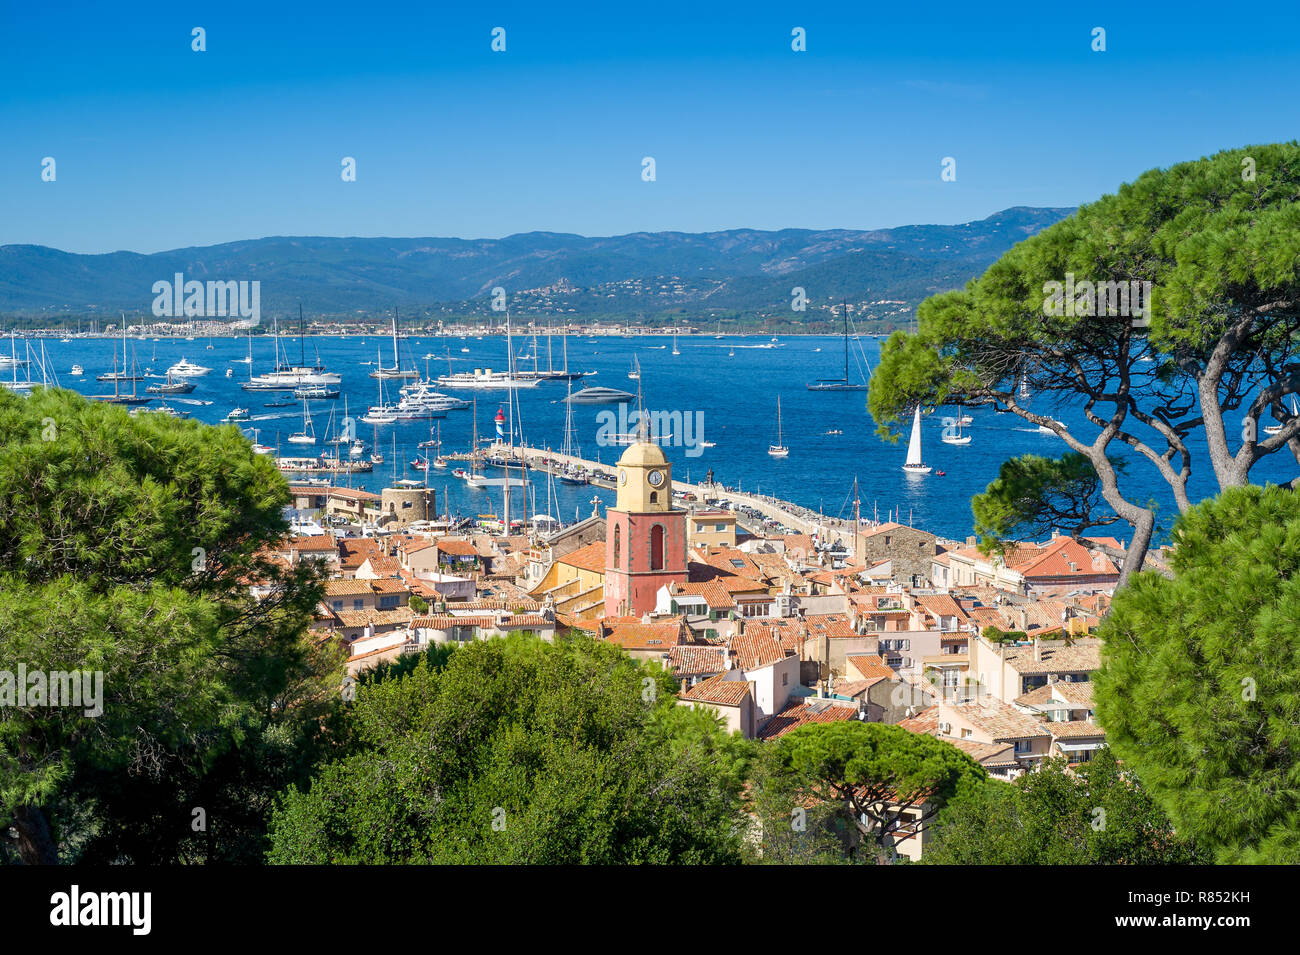 Saint-Tropez Altstadt und Yachthafen Blick von der Festung auf dem Hügel. Provence Cote d'Azur, Frankreich. Stockfoto